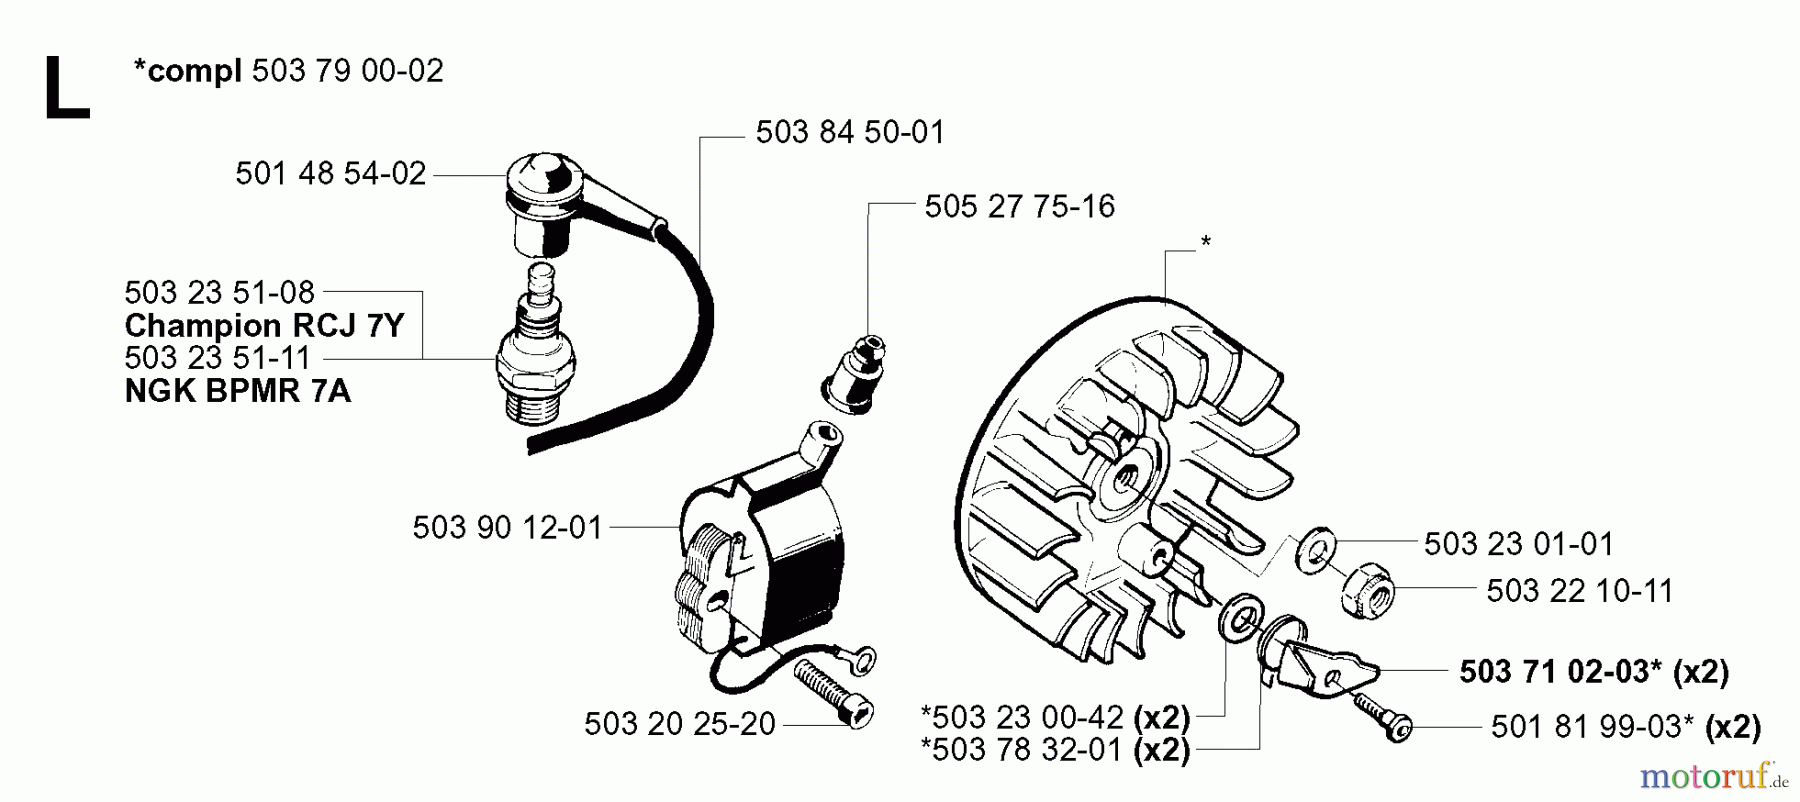  Jonsered Motorsensen, Trimmer GR50 EPA - Jonsered String/Brush Trimmer (2001-03) IGNITION SYSTEM